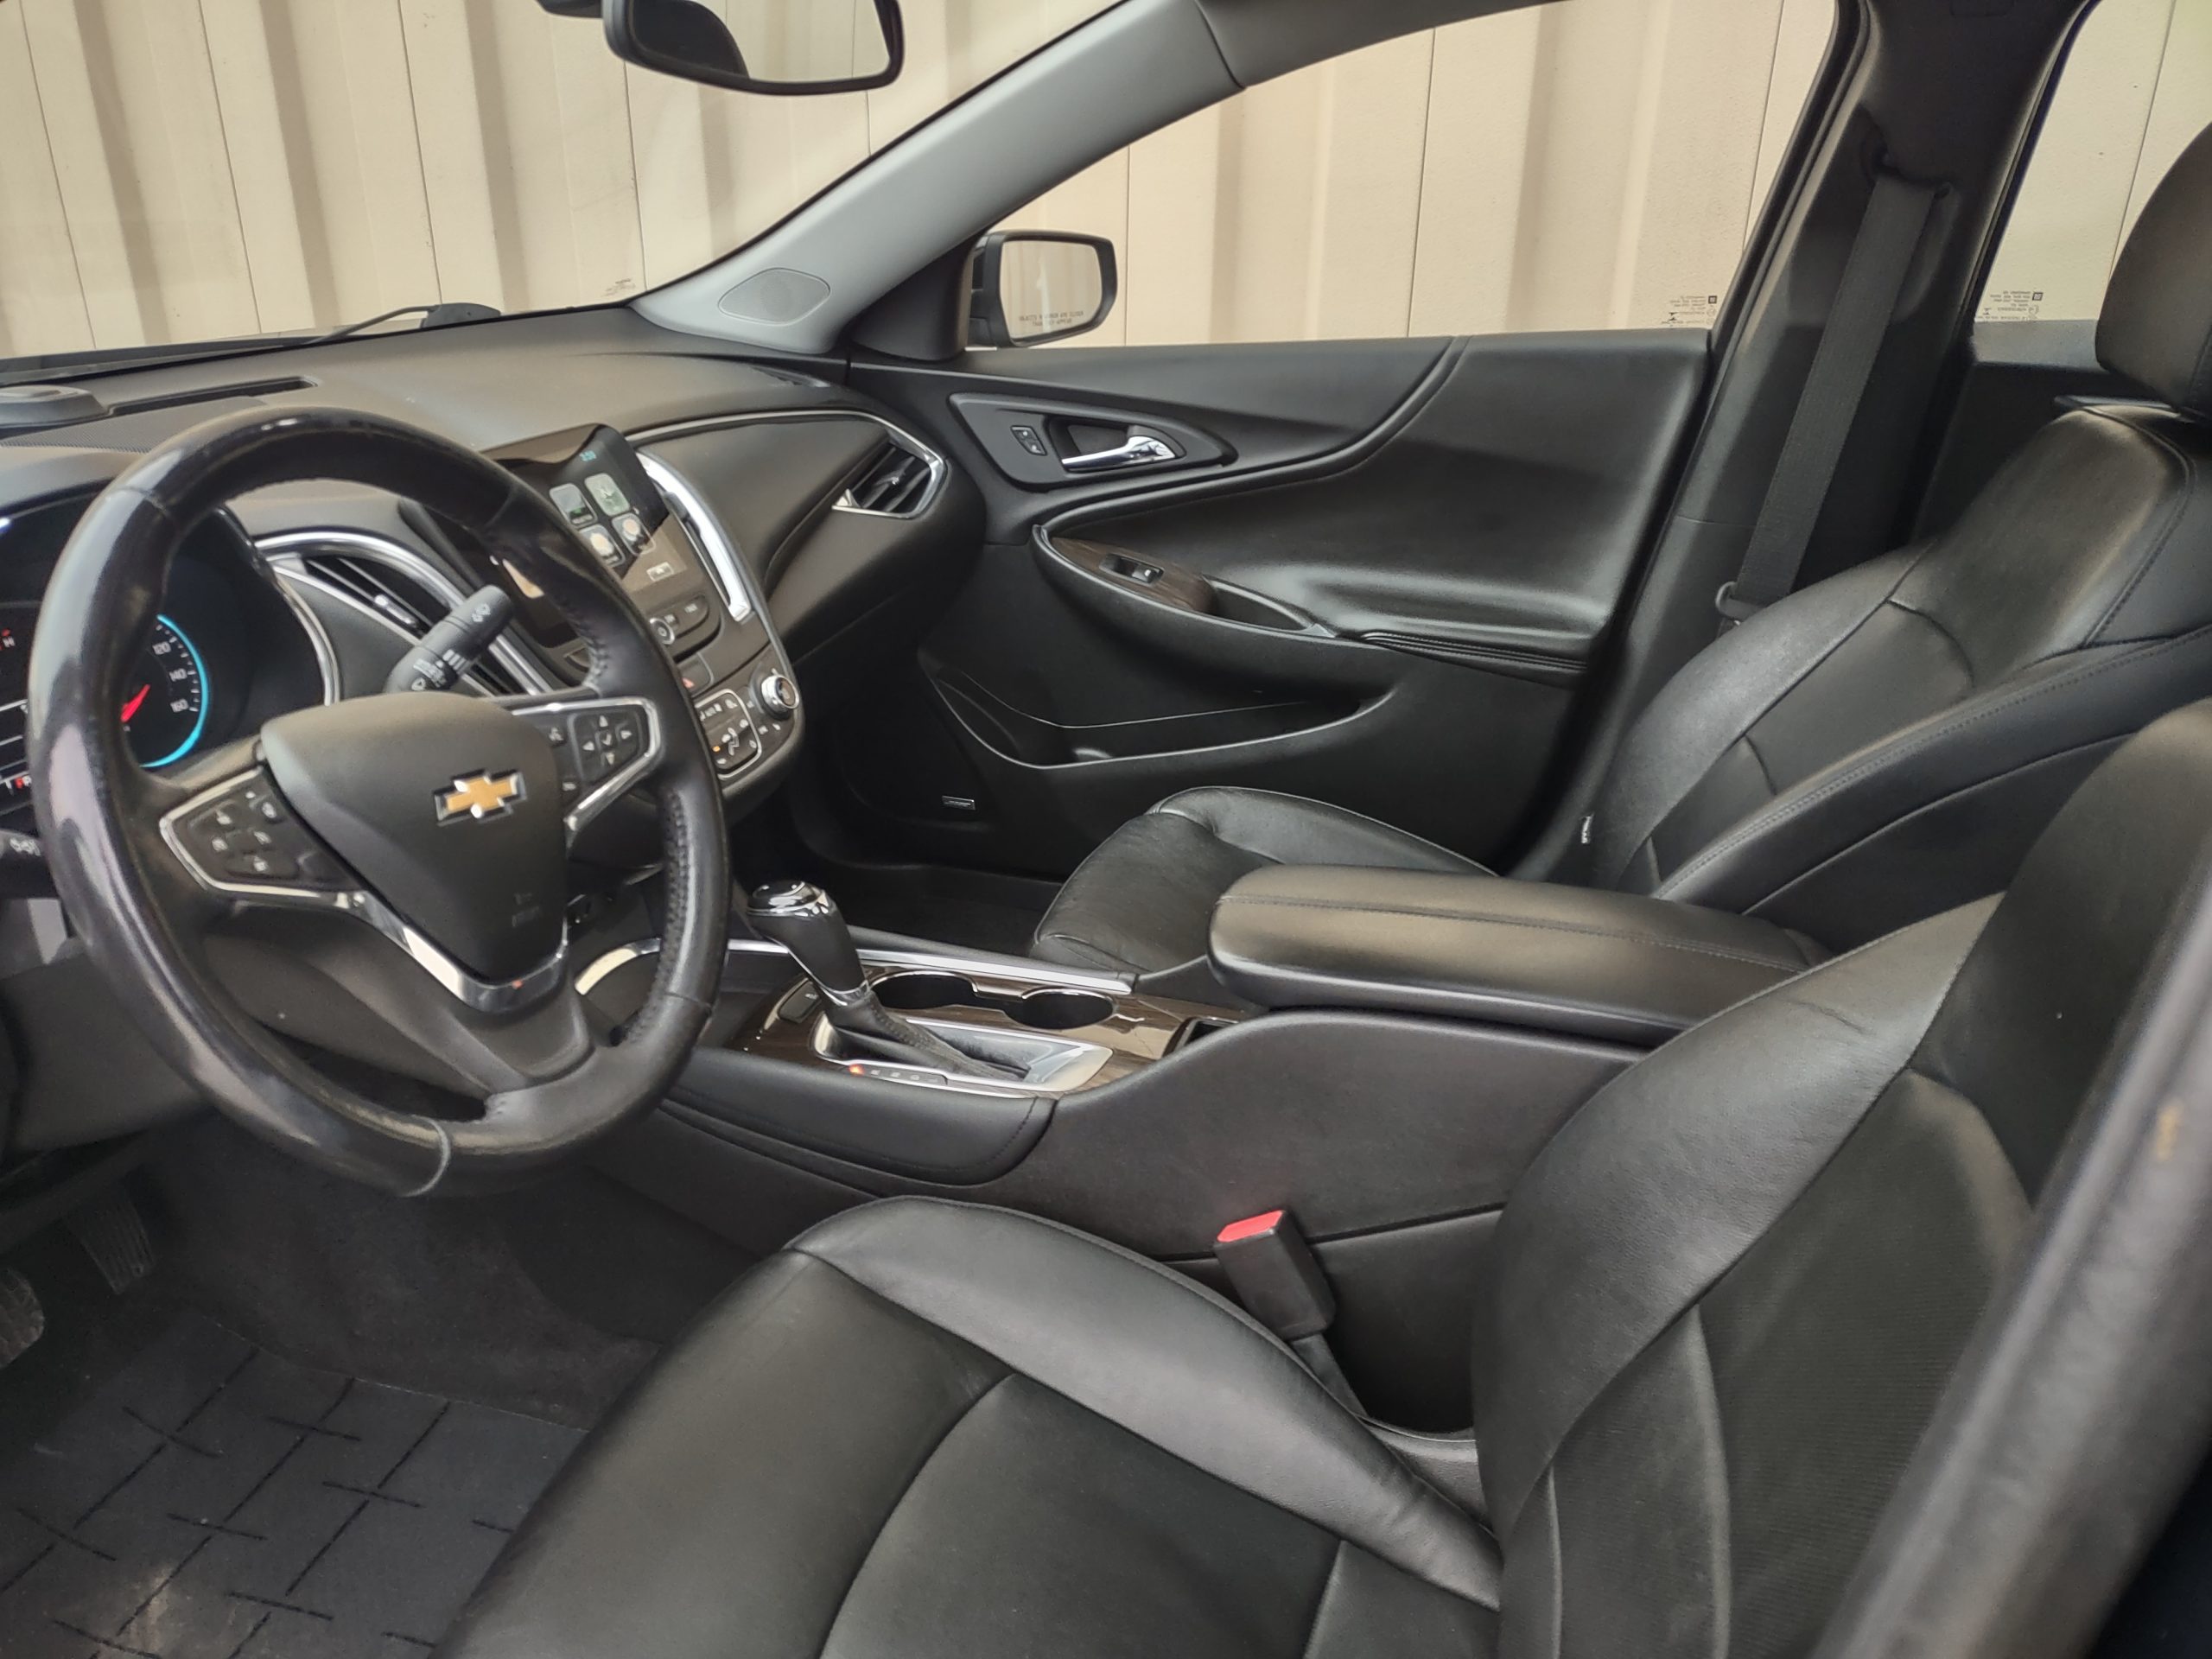 Used 2016 Chevrolet Malibu Premier Sedan for sale in 